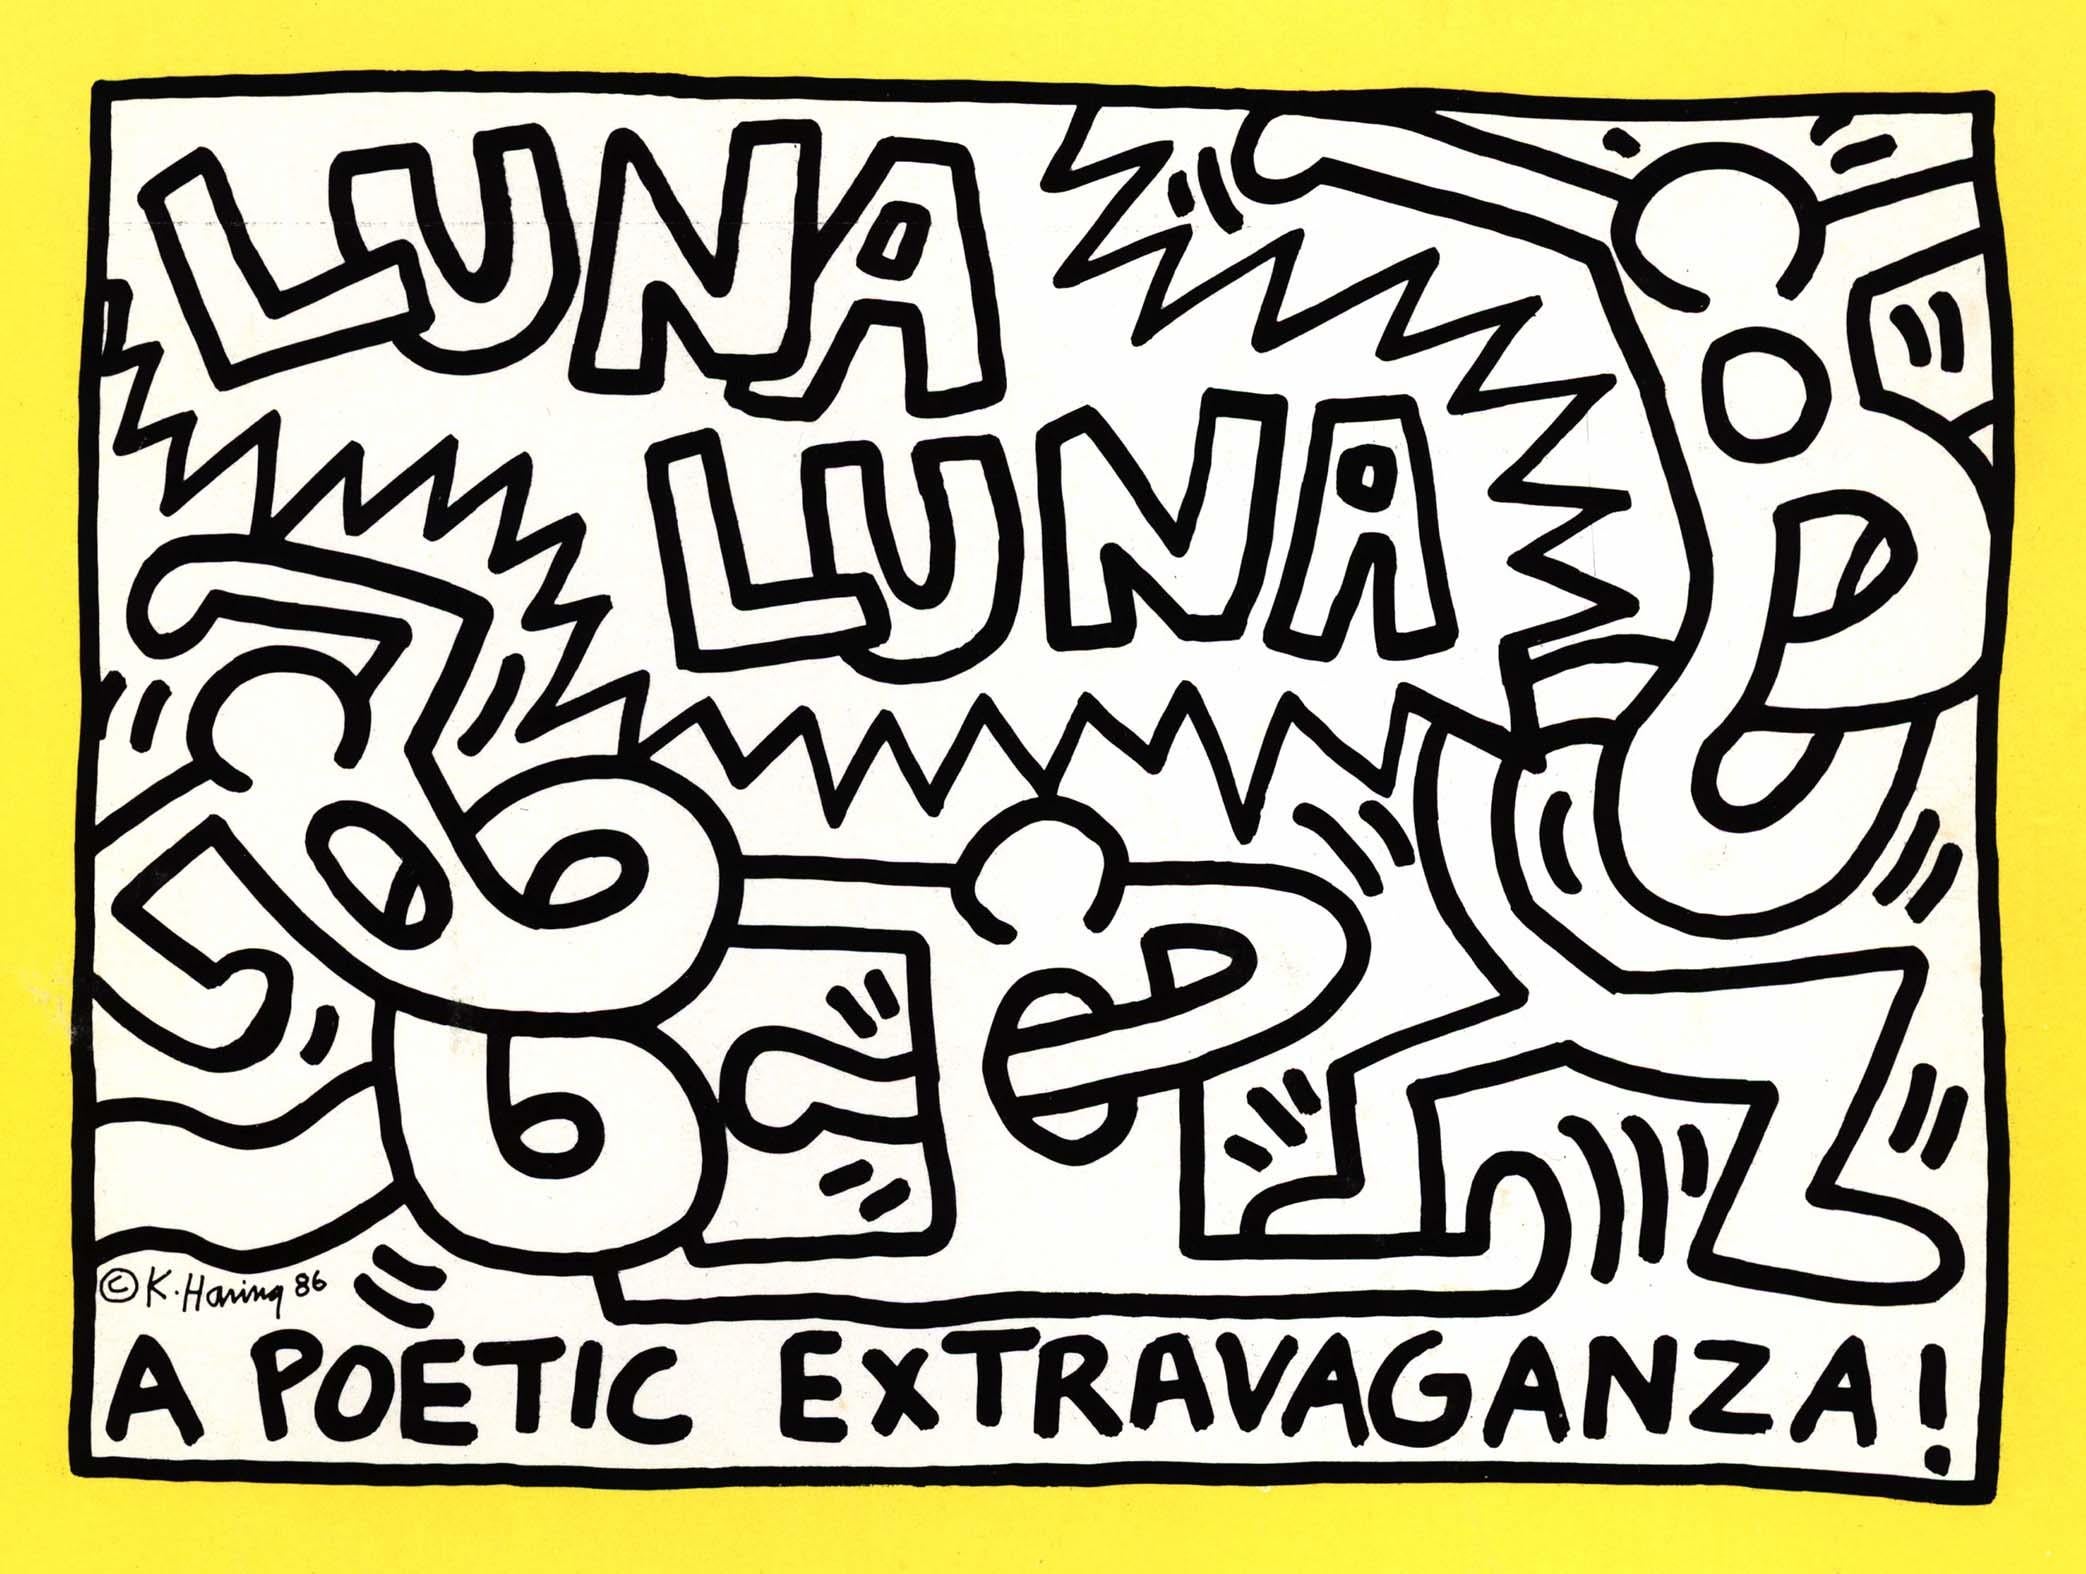 Keith Haring Luna Luna Karussell. A Poetic Extravaganza, 1986 (Keith haring Luna Luna) :
Luna Luna " a été organisée par Andre Heller pour " A Fair with Modern Art " à Hambourg en 1987 et a été récemment réintroduite dans le monde, après près de 40